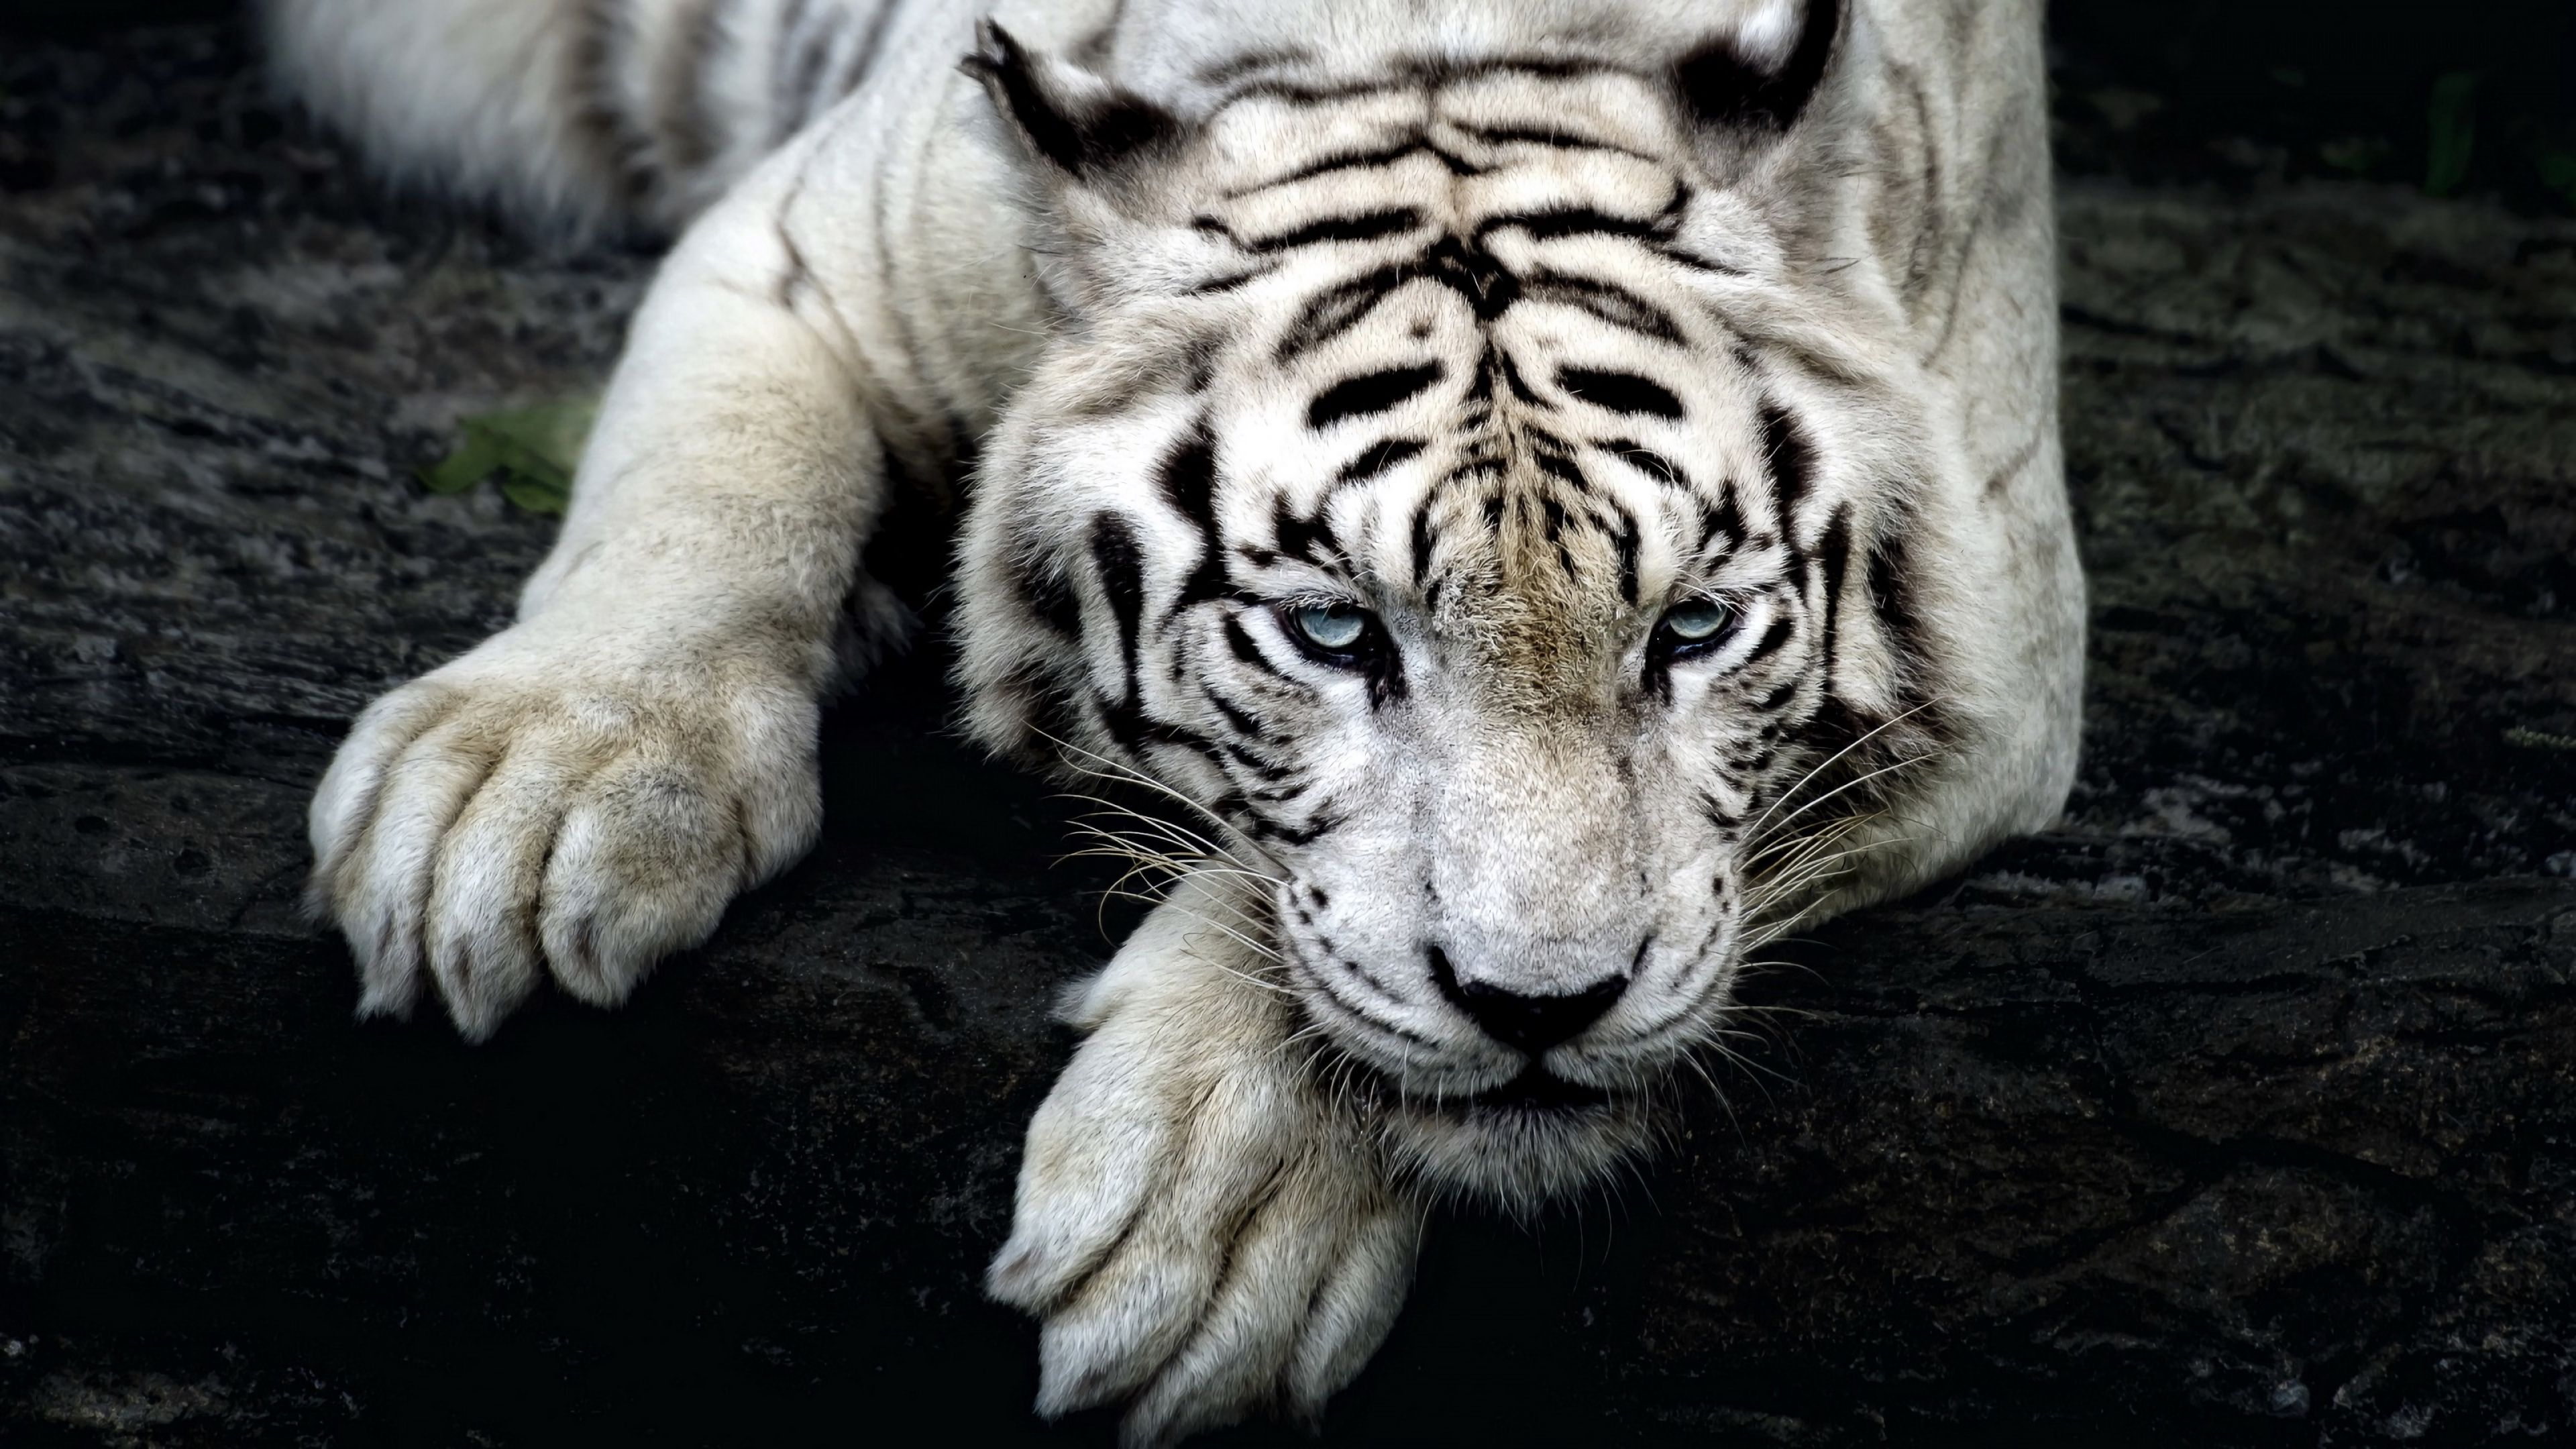 Популярные заставки и фоны Белый Тигр на компьютер